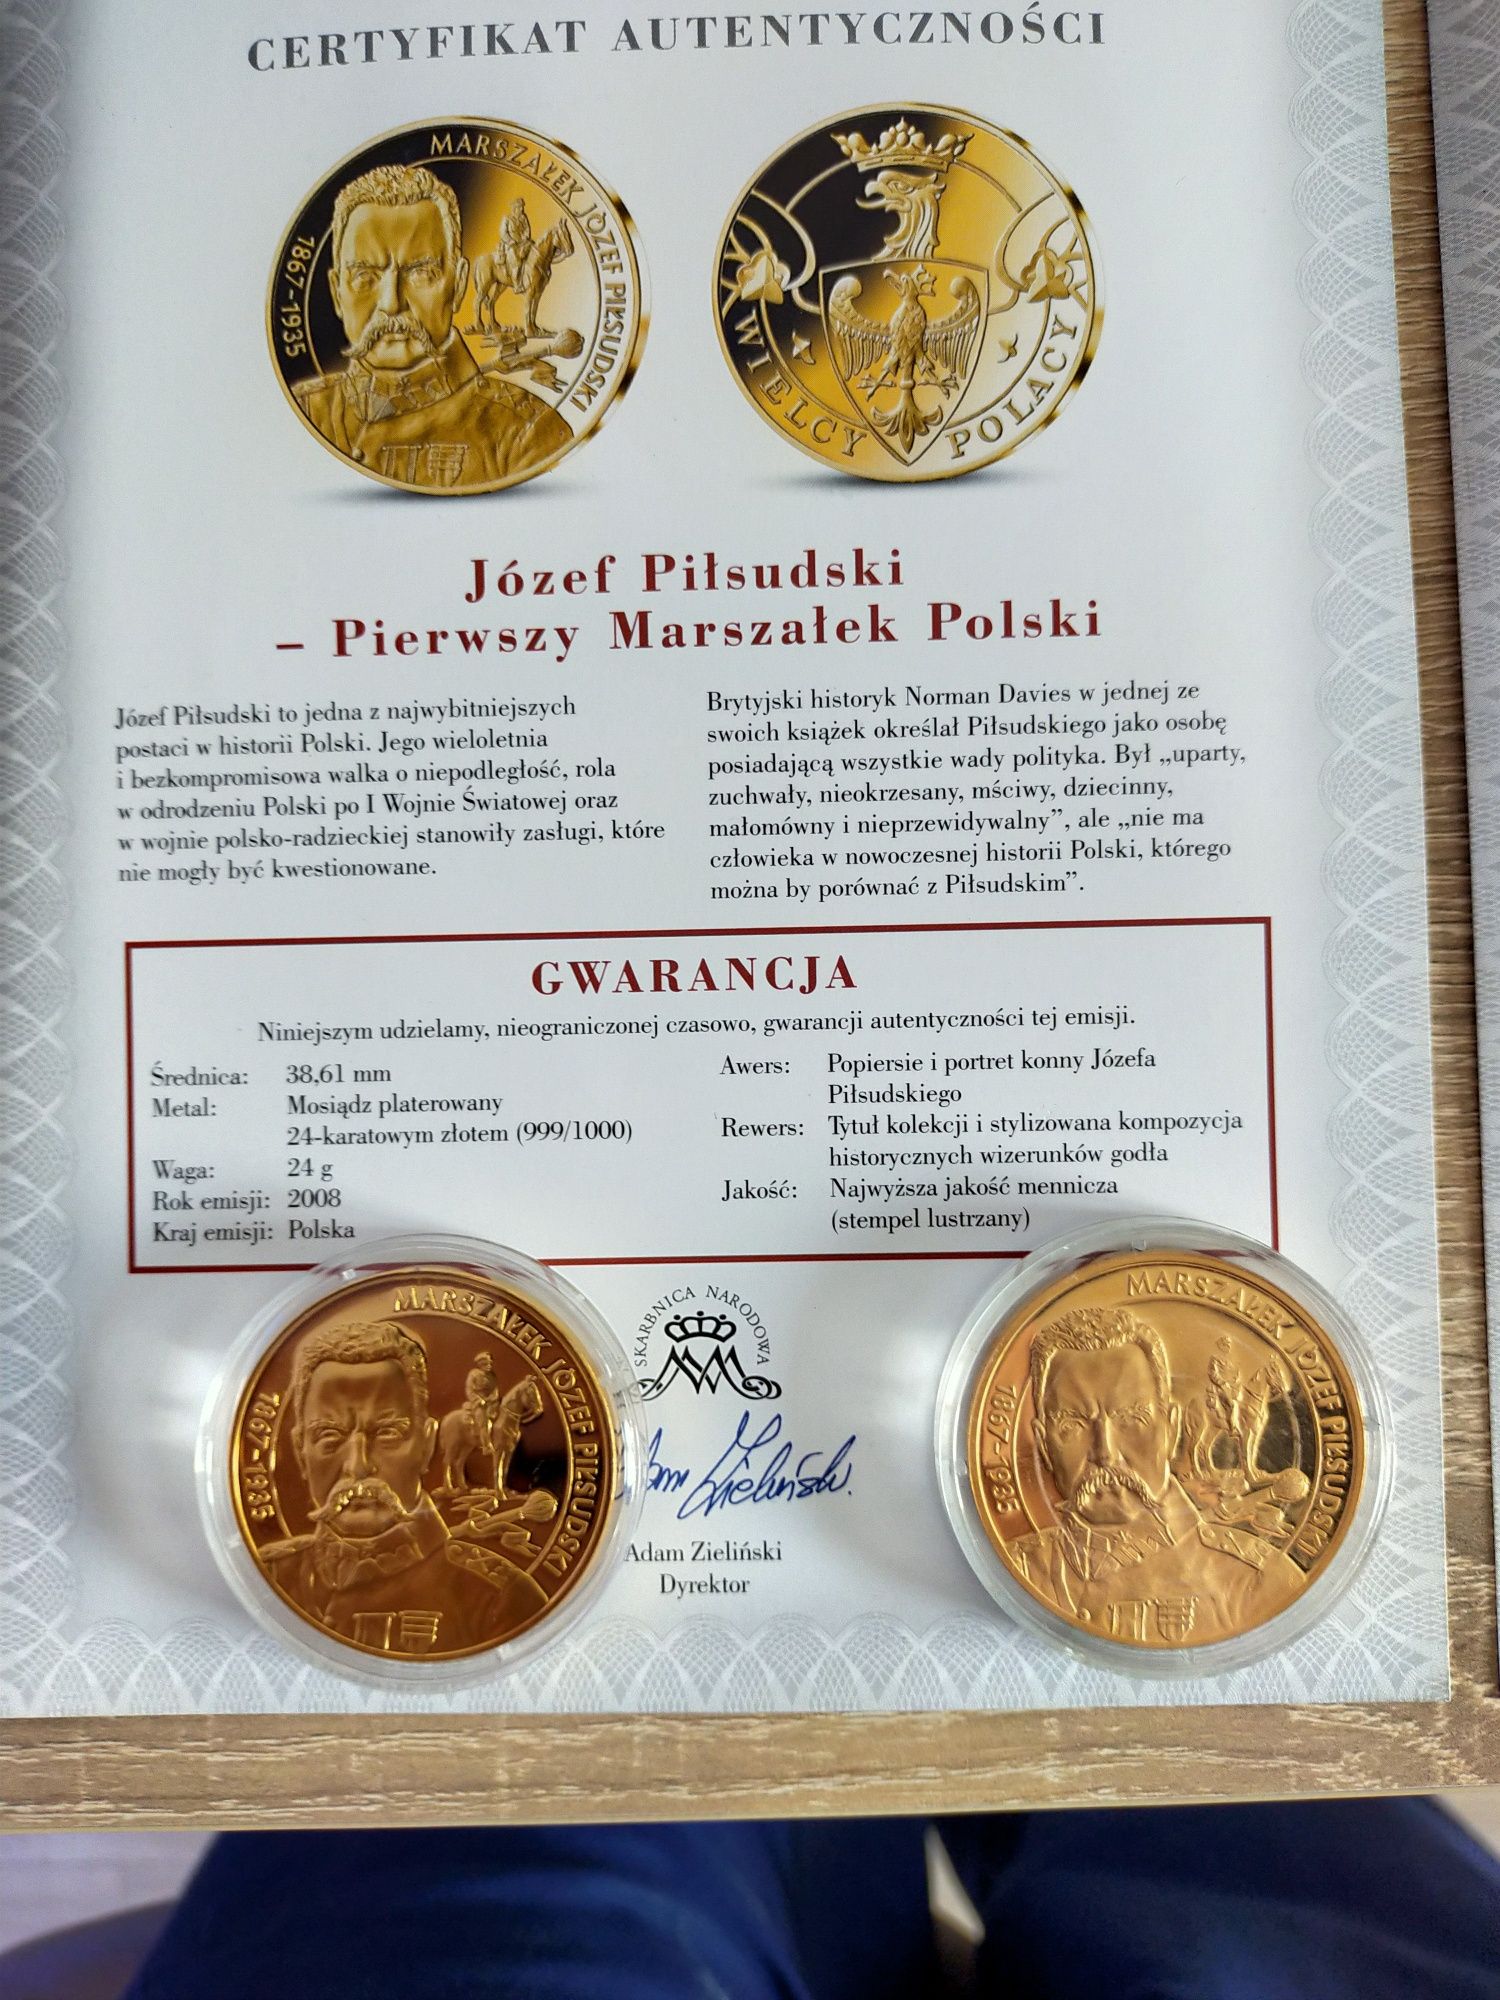 Medale Wielcy Polacy 2X Piłsudski z ceryfikatem